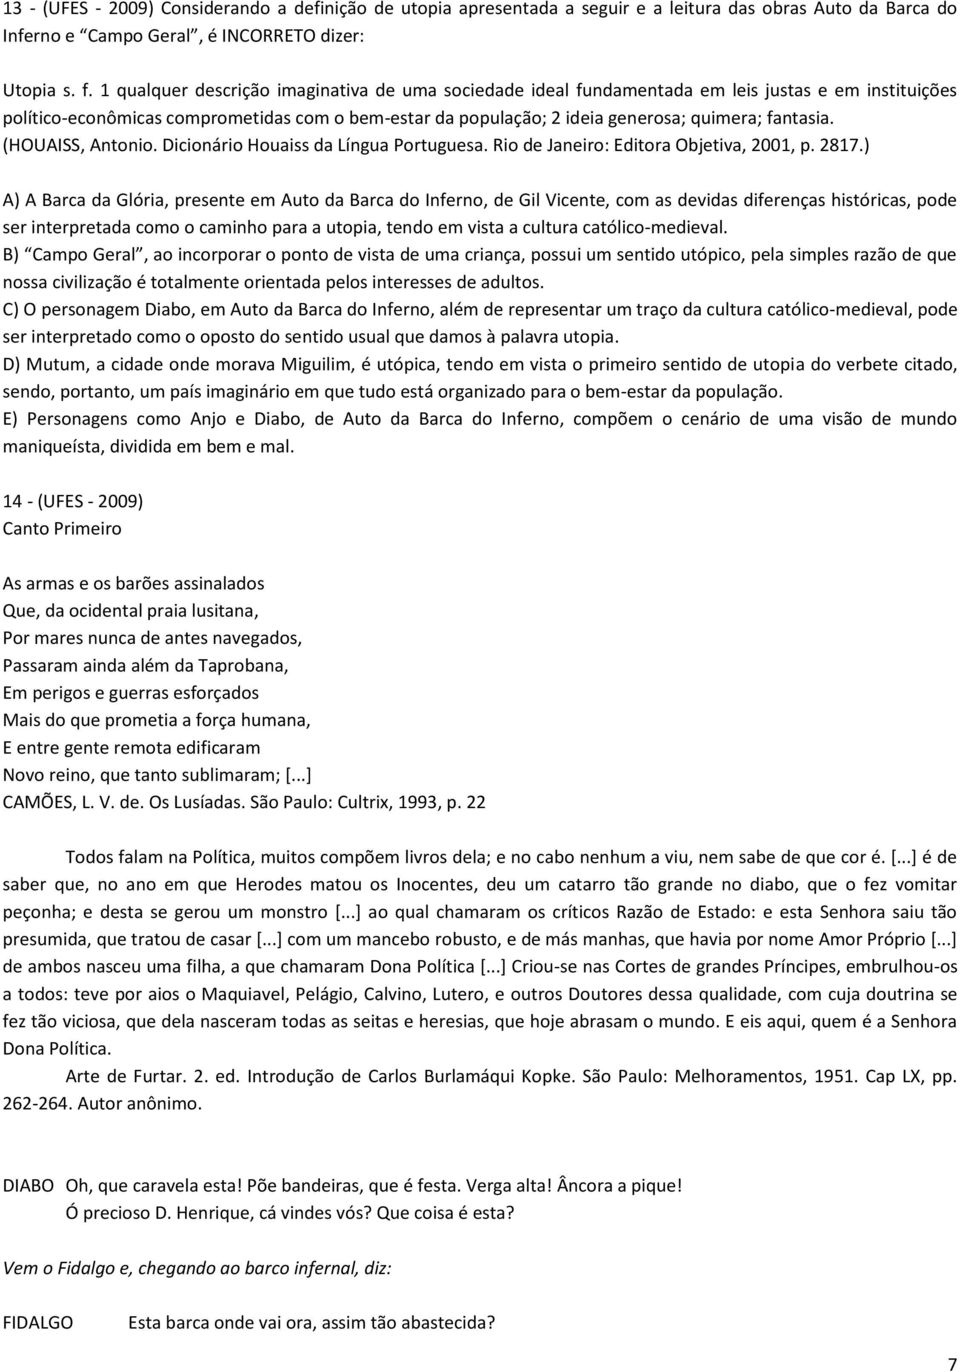 fantasia. (HOUAISS, Antonio. Dicionário Houaiss da Língua Portuguesa. Rio de Janeiro: Editora Objetiva, 2001, p. 2817.